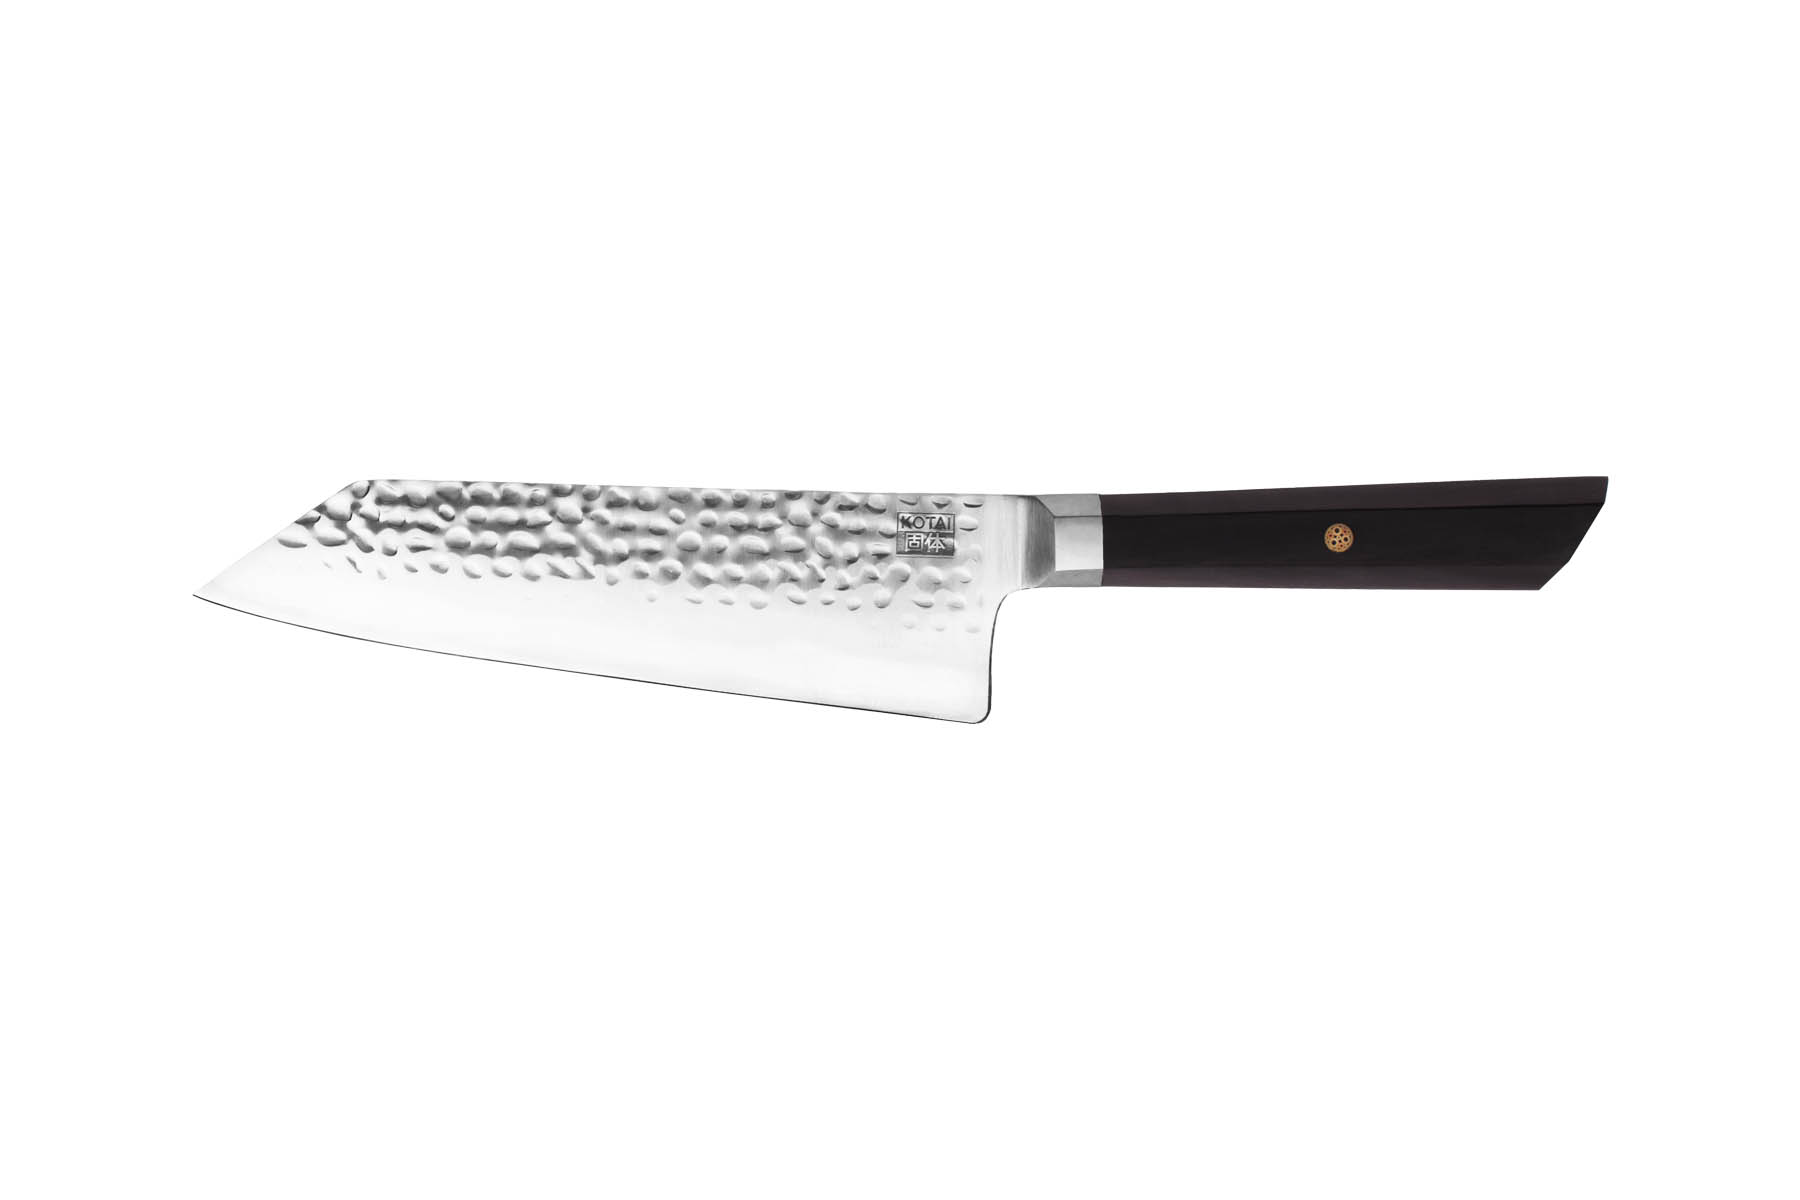 Couteau de cuisine type japonais Kotai ébène - Couteau bunka 17 cm